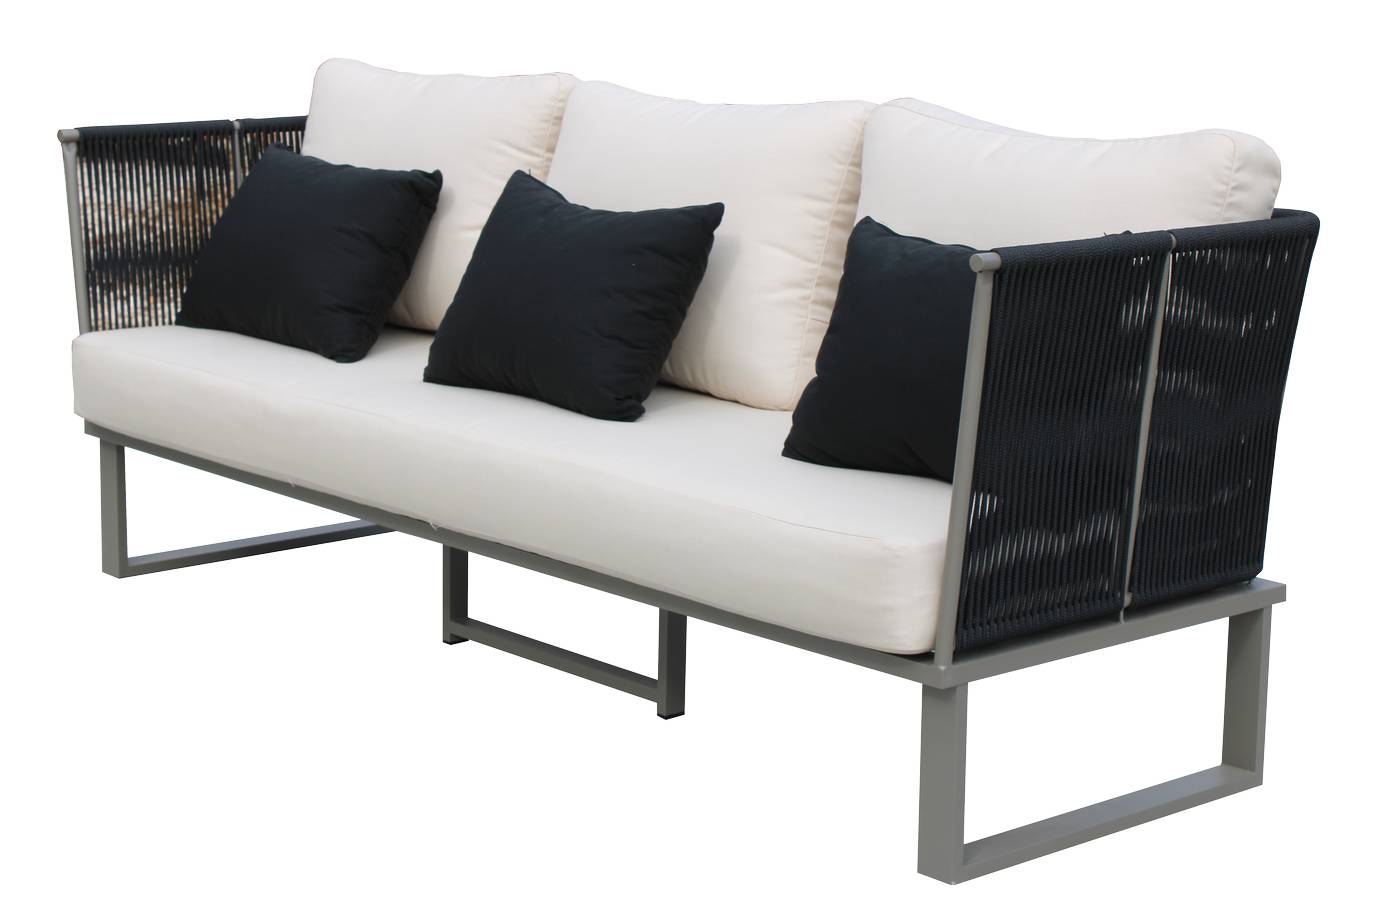 Sofá relax 3 plazas con cojines desenfundables. Estructura de aluminio recubierta de cuerda redonda. Disponible varios colores.